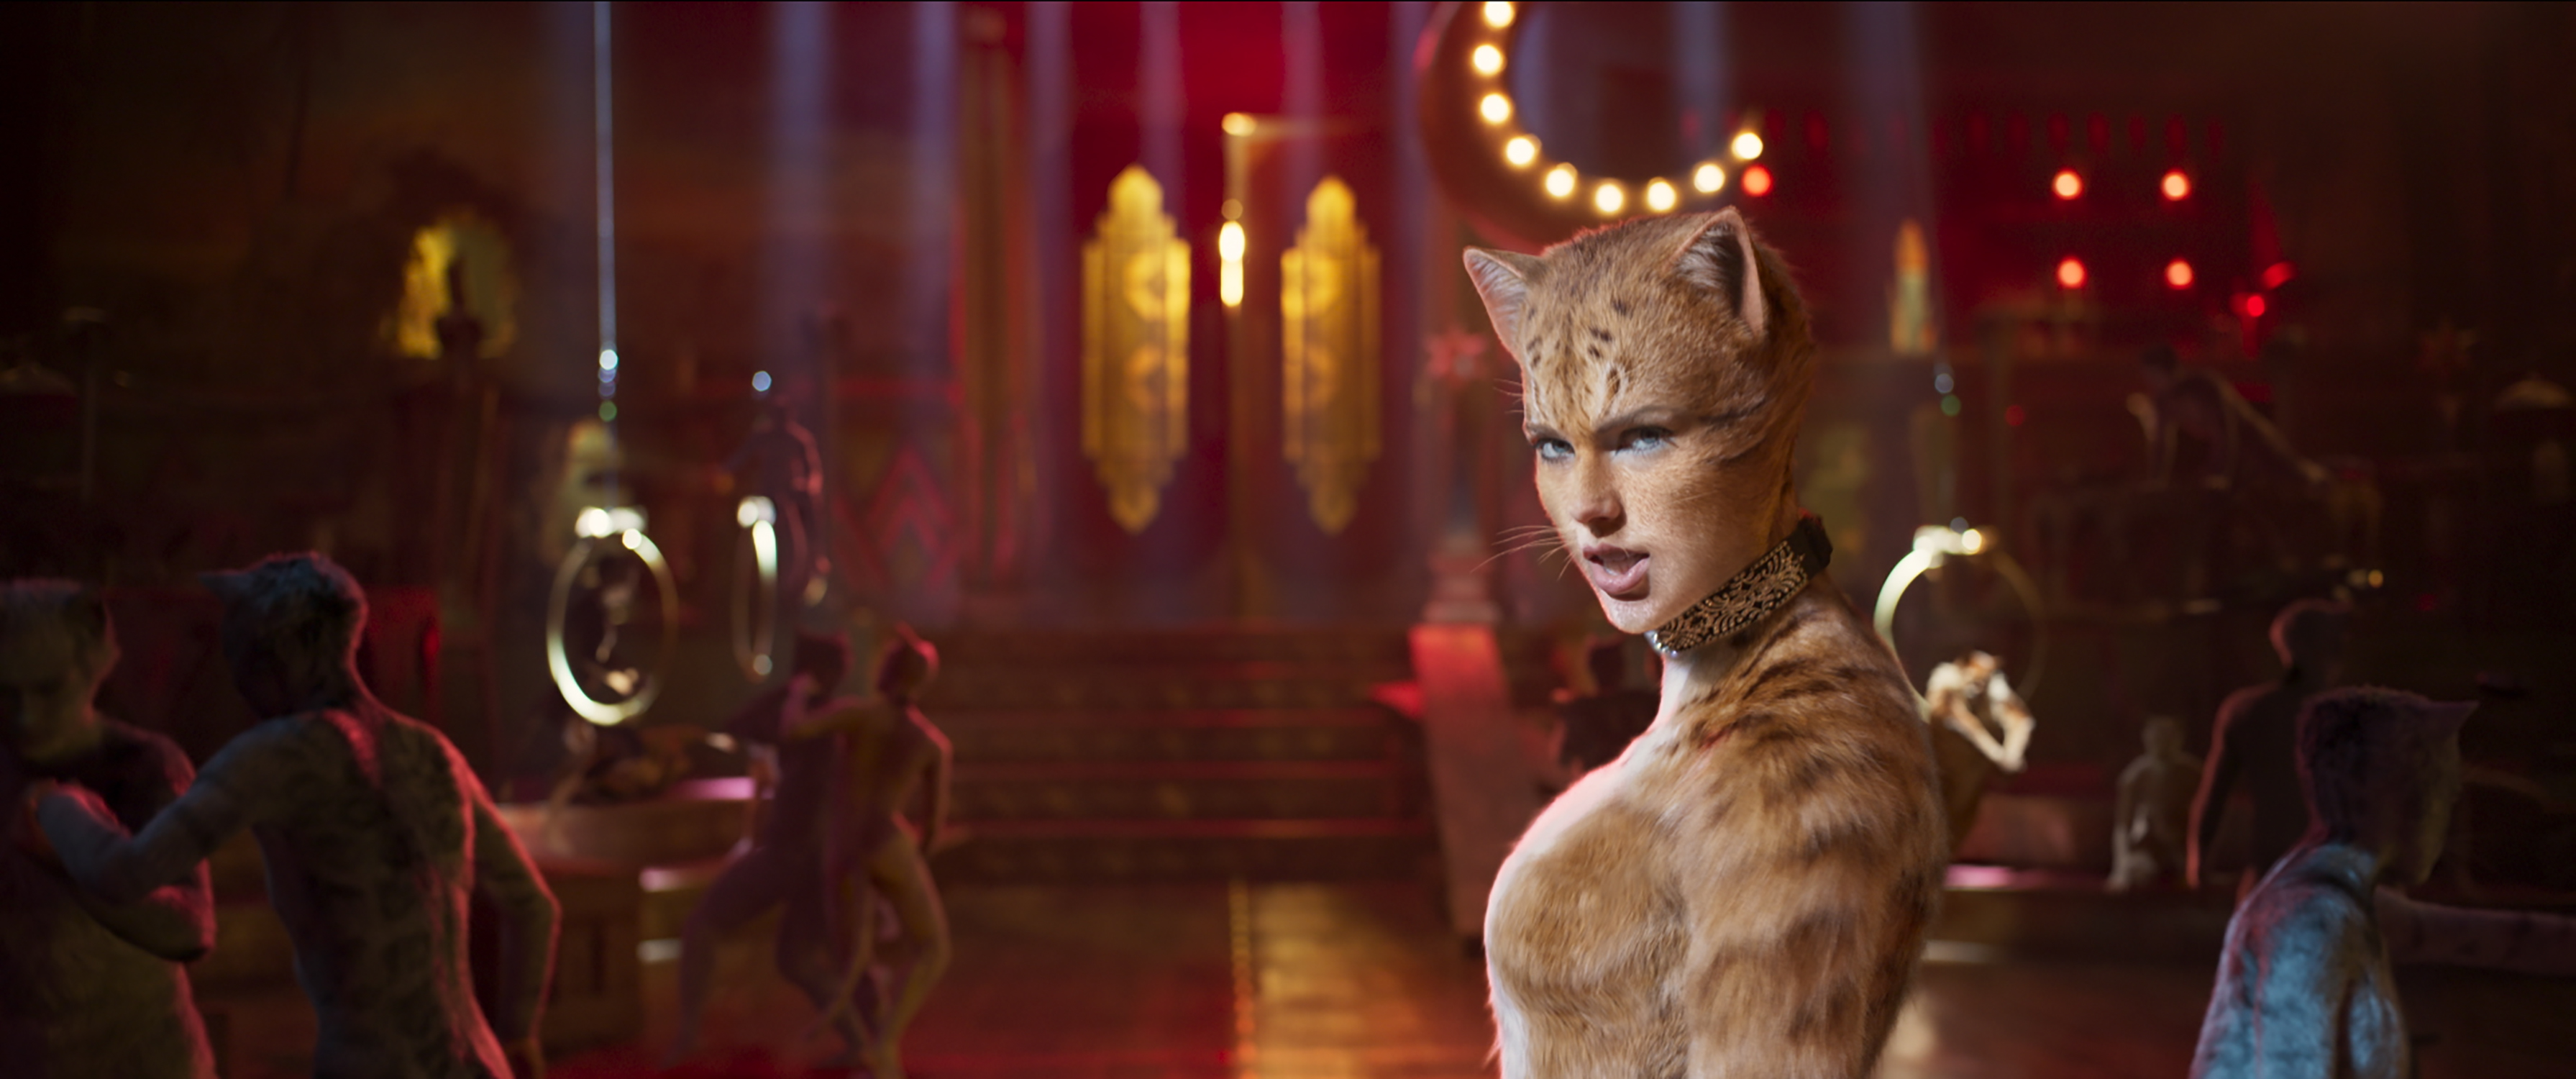 Cats キャッツ は豪華なキャストが楽しい 大ヒット ミュージカルの完全映画化 映画の殿堂